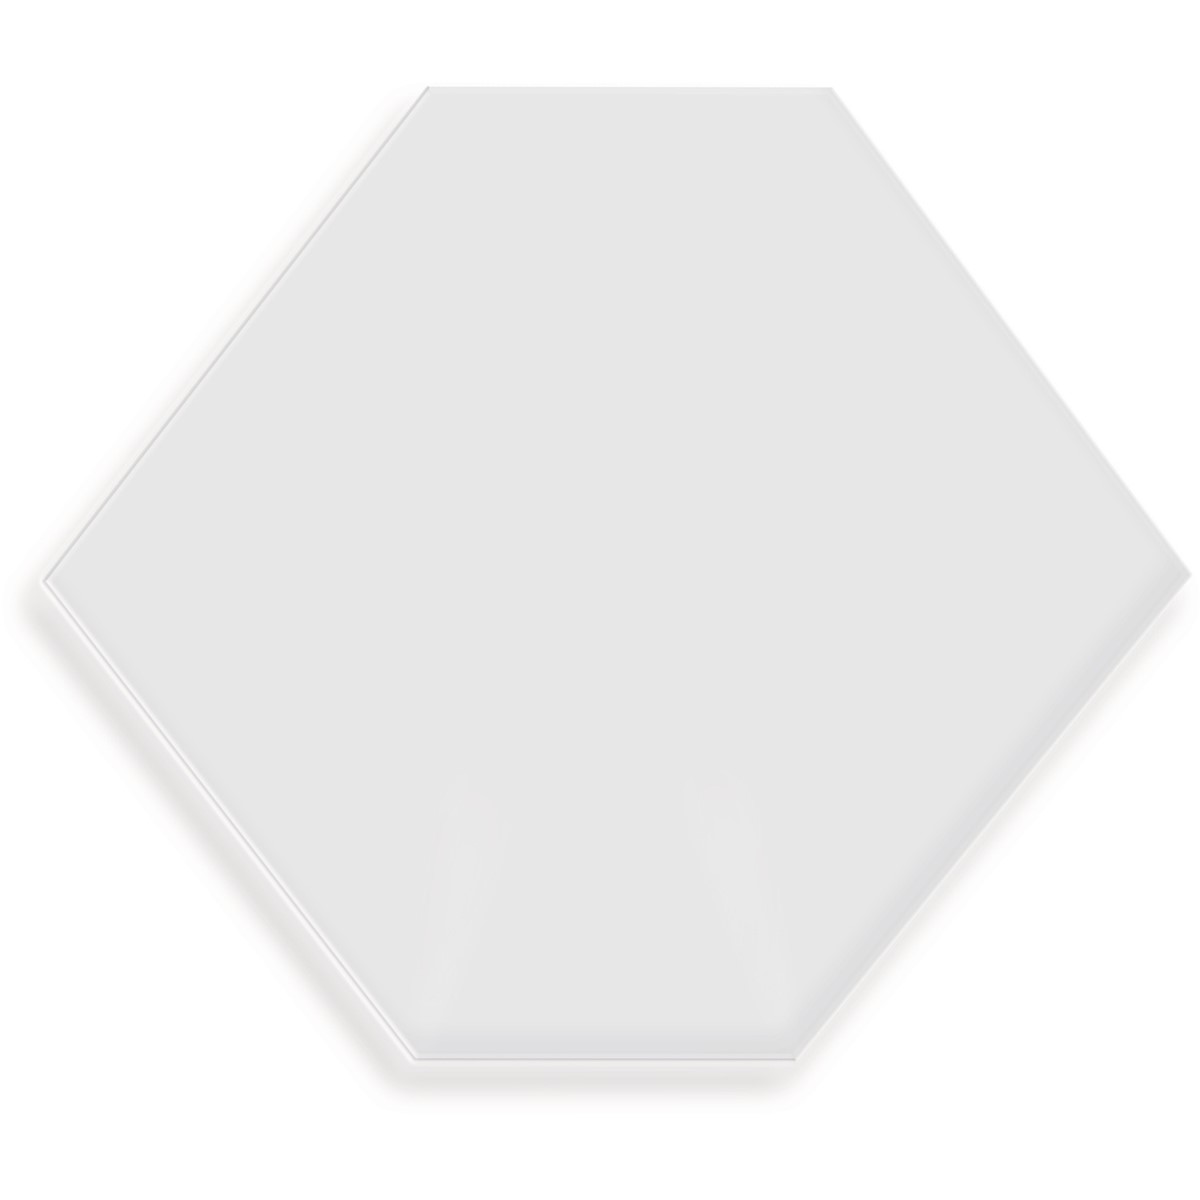 tesa 77731-00000 - Doppelseitige Klebepads für transparente